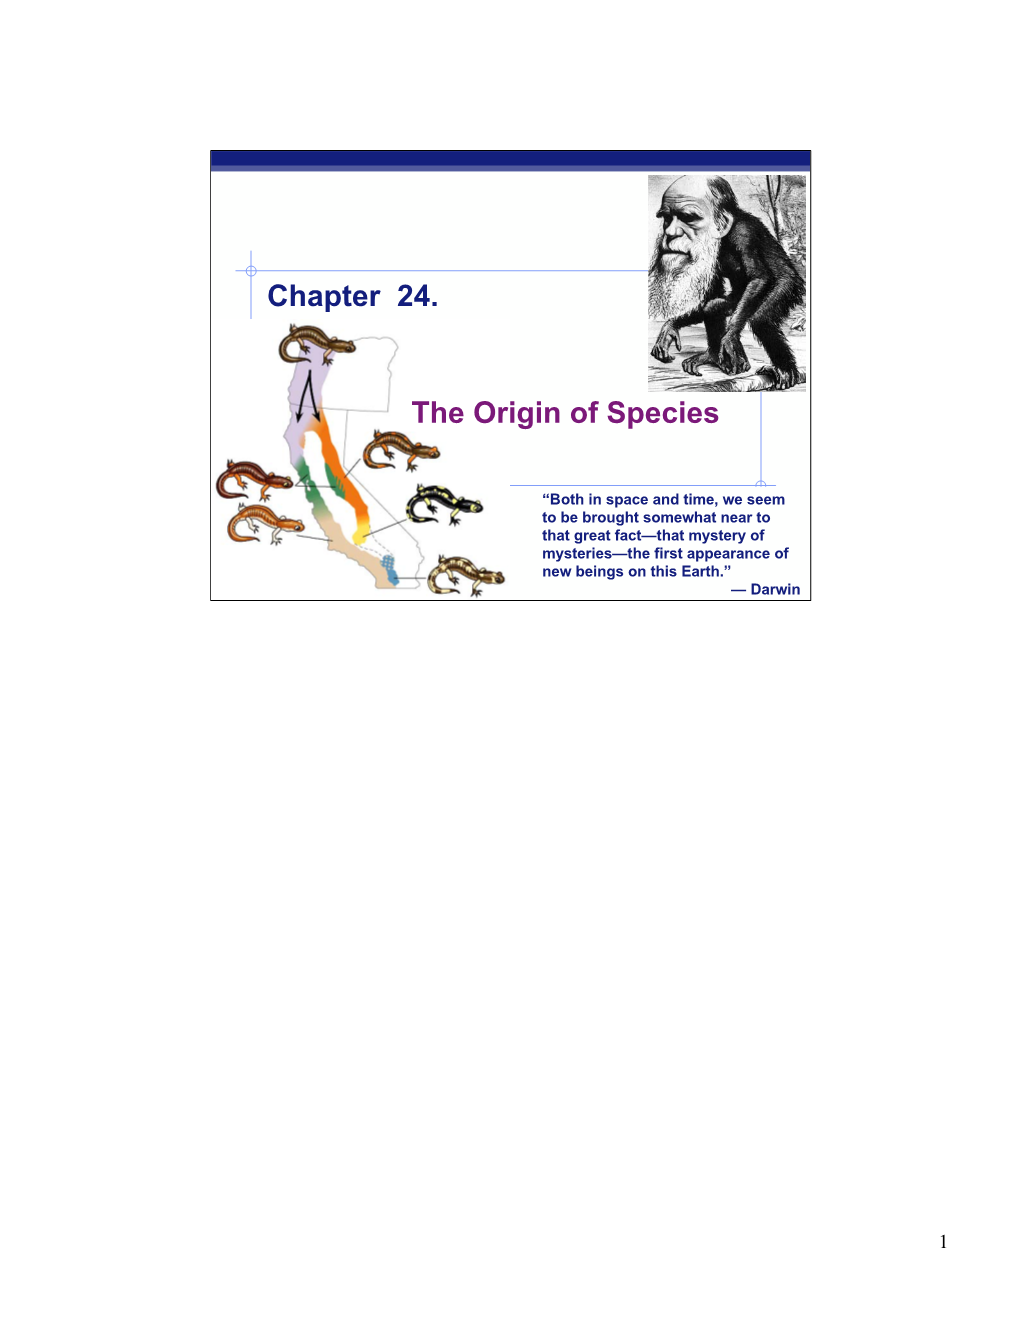 Chapter 24. the Origin of Species